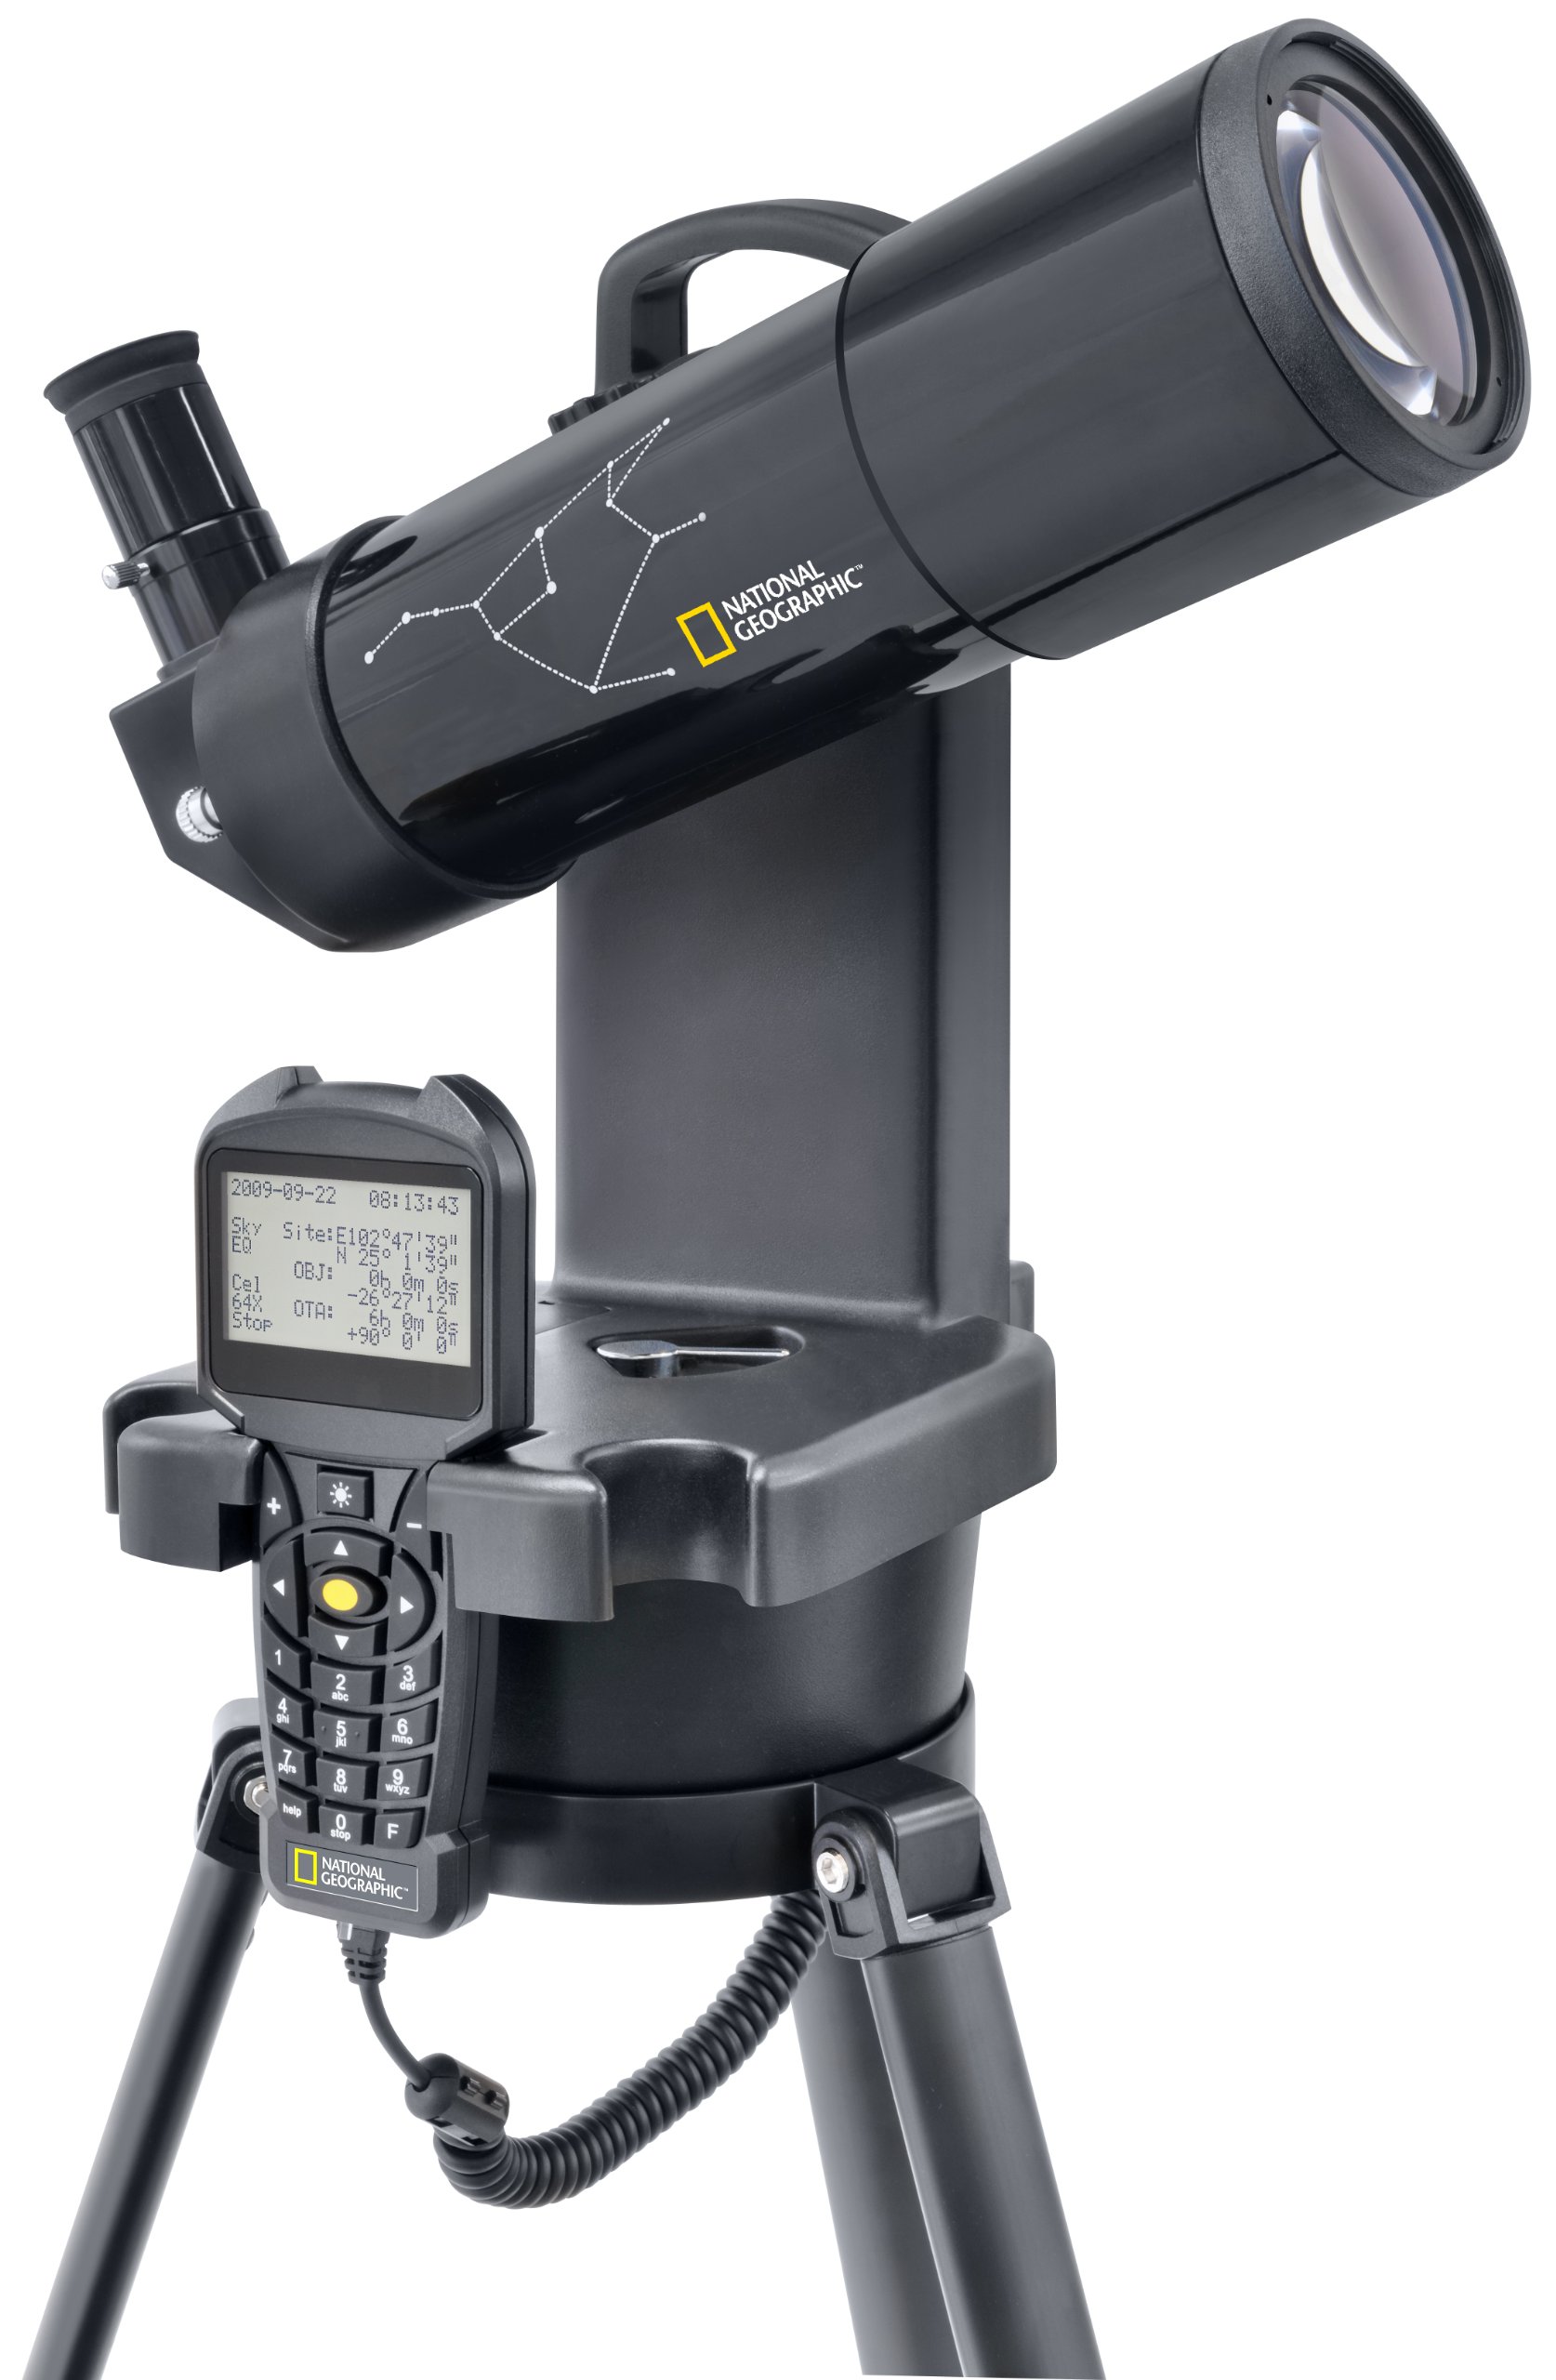 National Geographic Refraktor Teleskop 70/350 computergesteuert mit automatischer Steuerung per Handbox inklusive Stativ und umfangreichem Zubehör